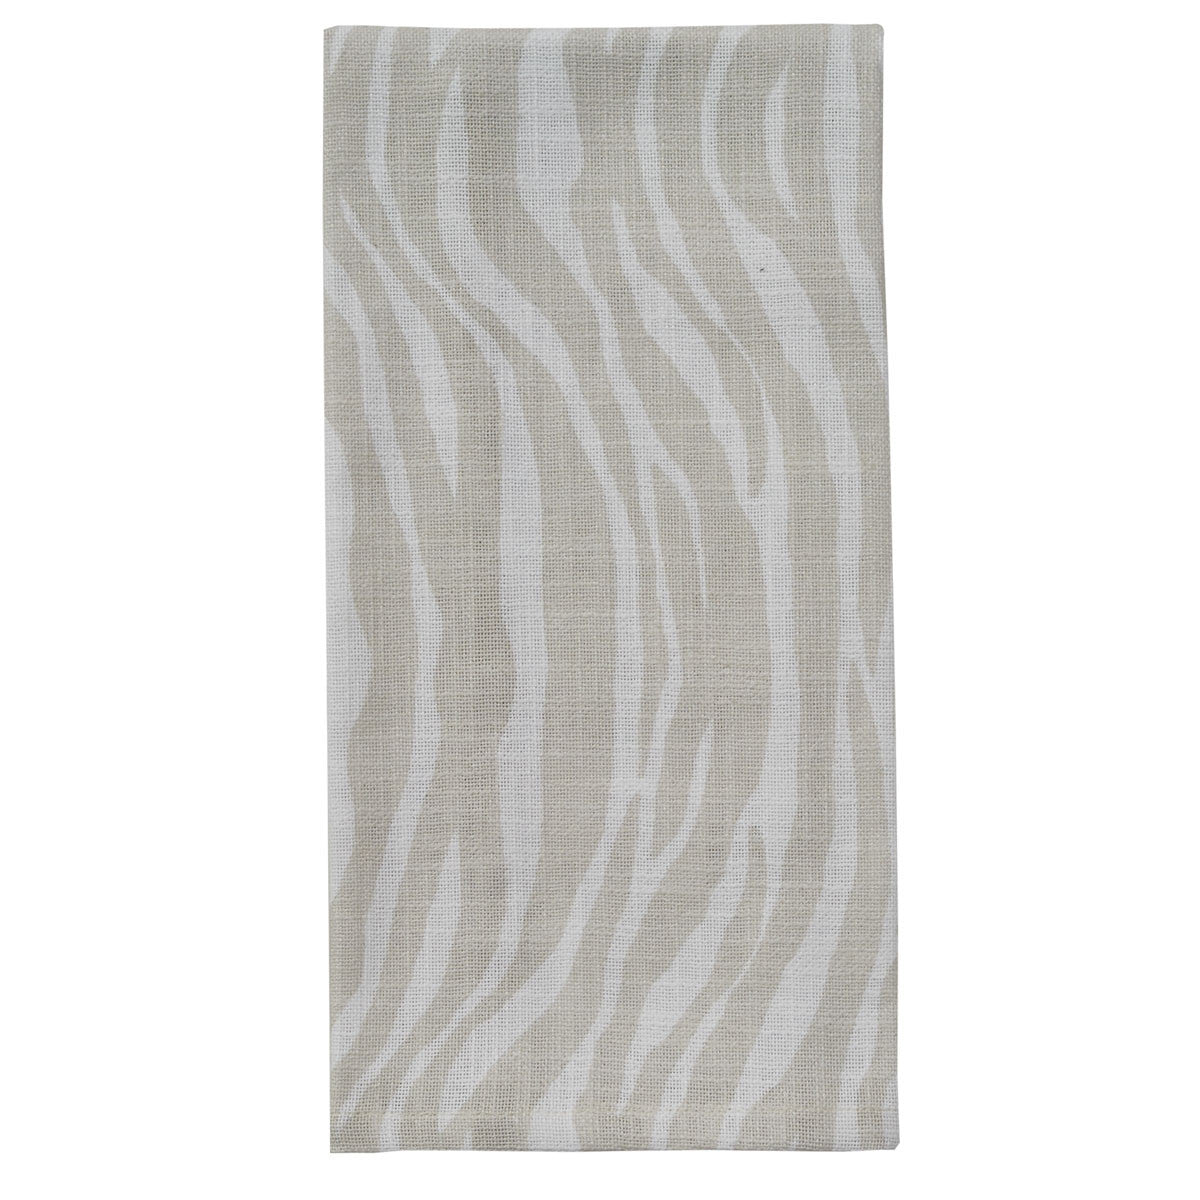 Zebra Printed Towel - Tassels Set of 2  Park Designs